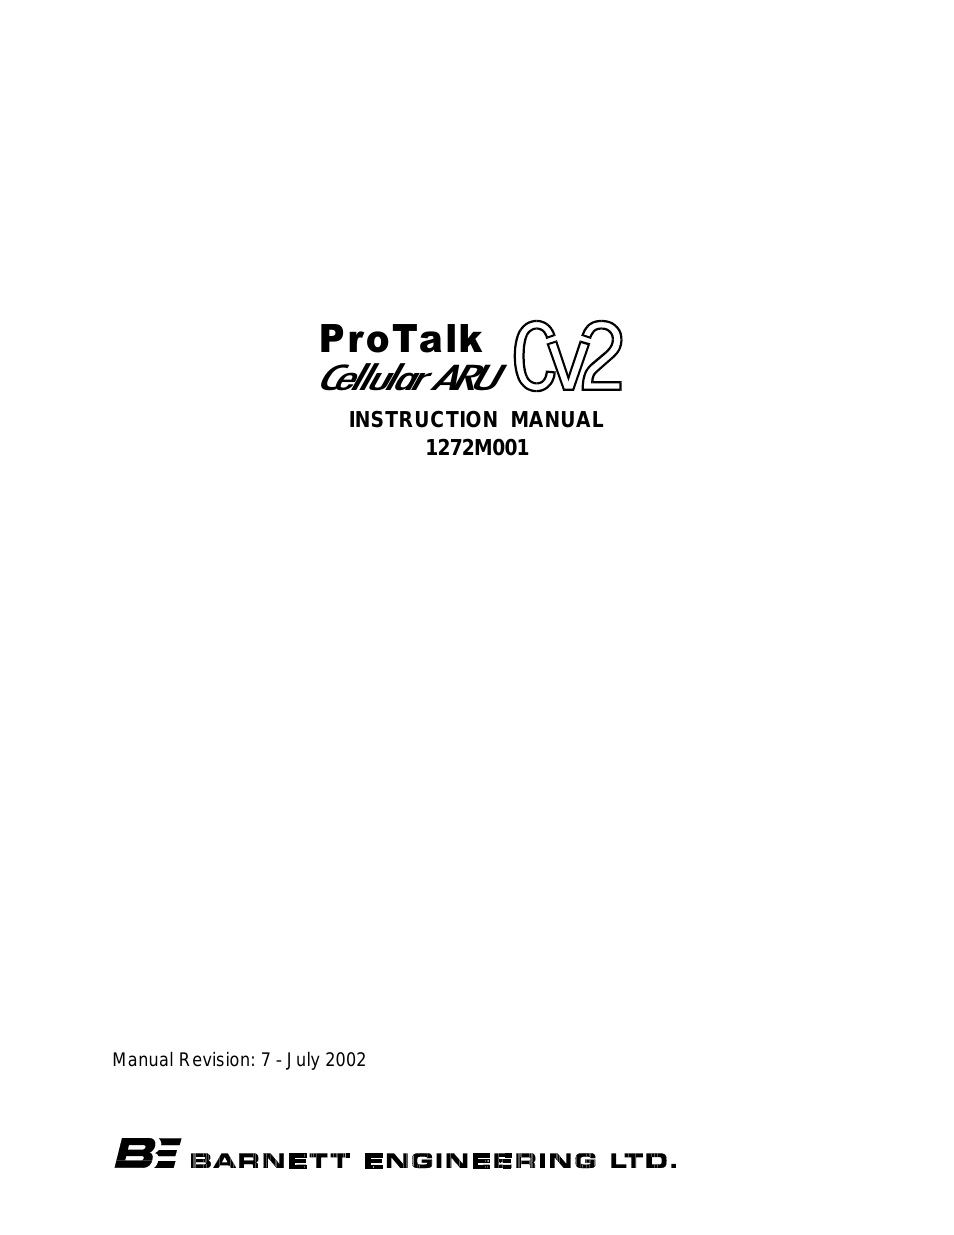 Pro Talk ARU CV2